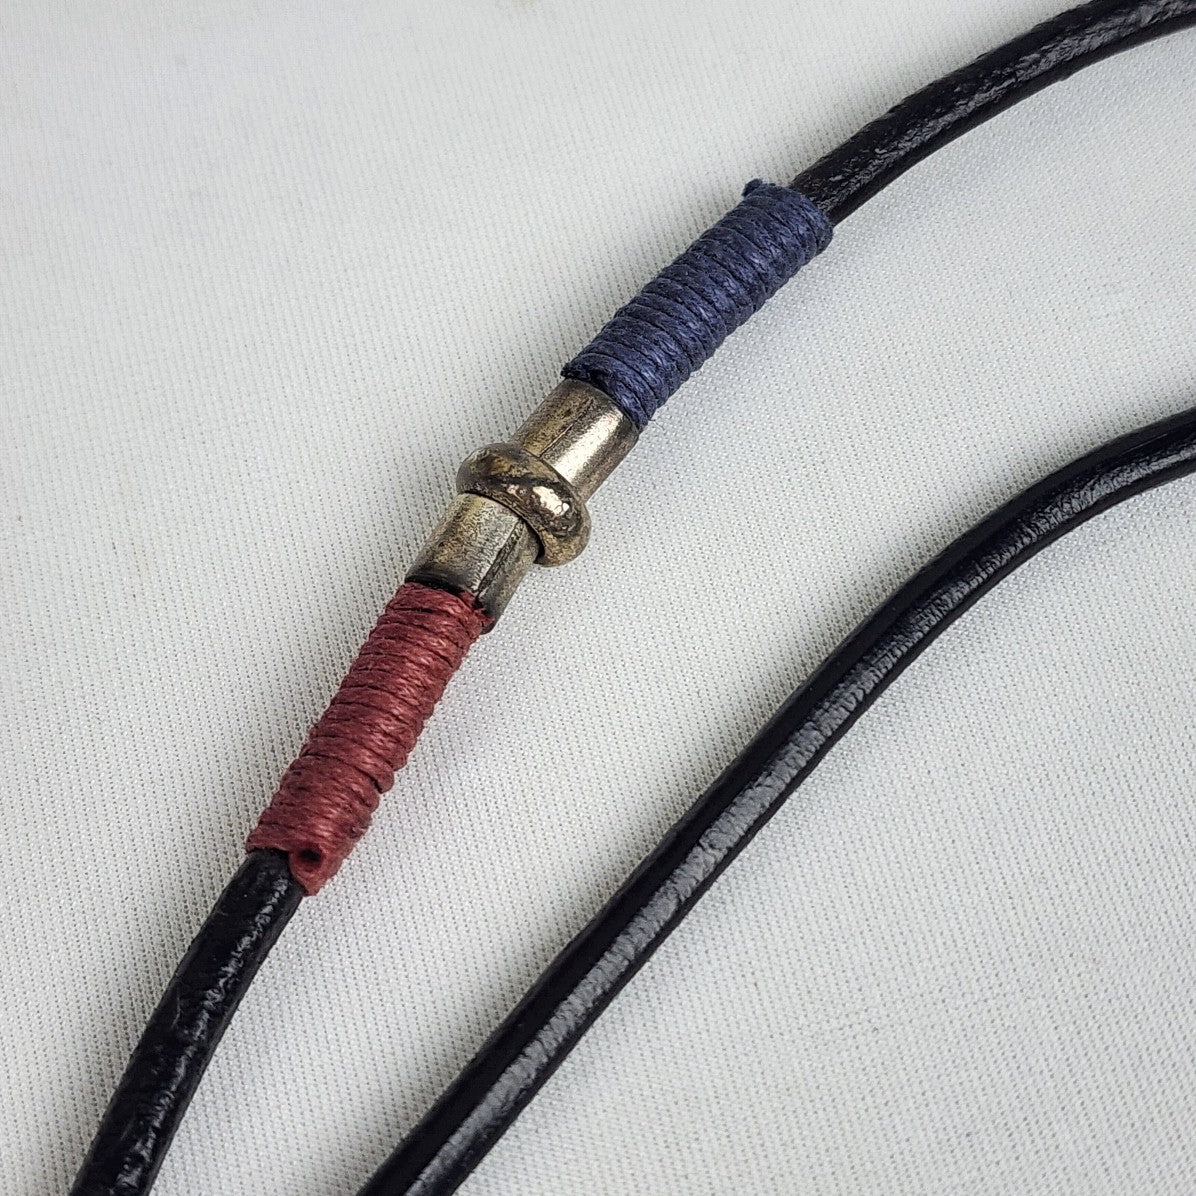 Silver Tone Oval Pendant Black Cord Necklace